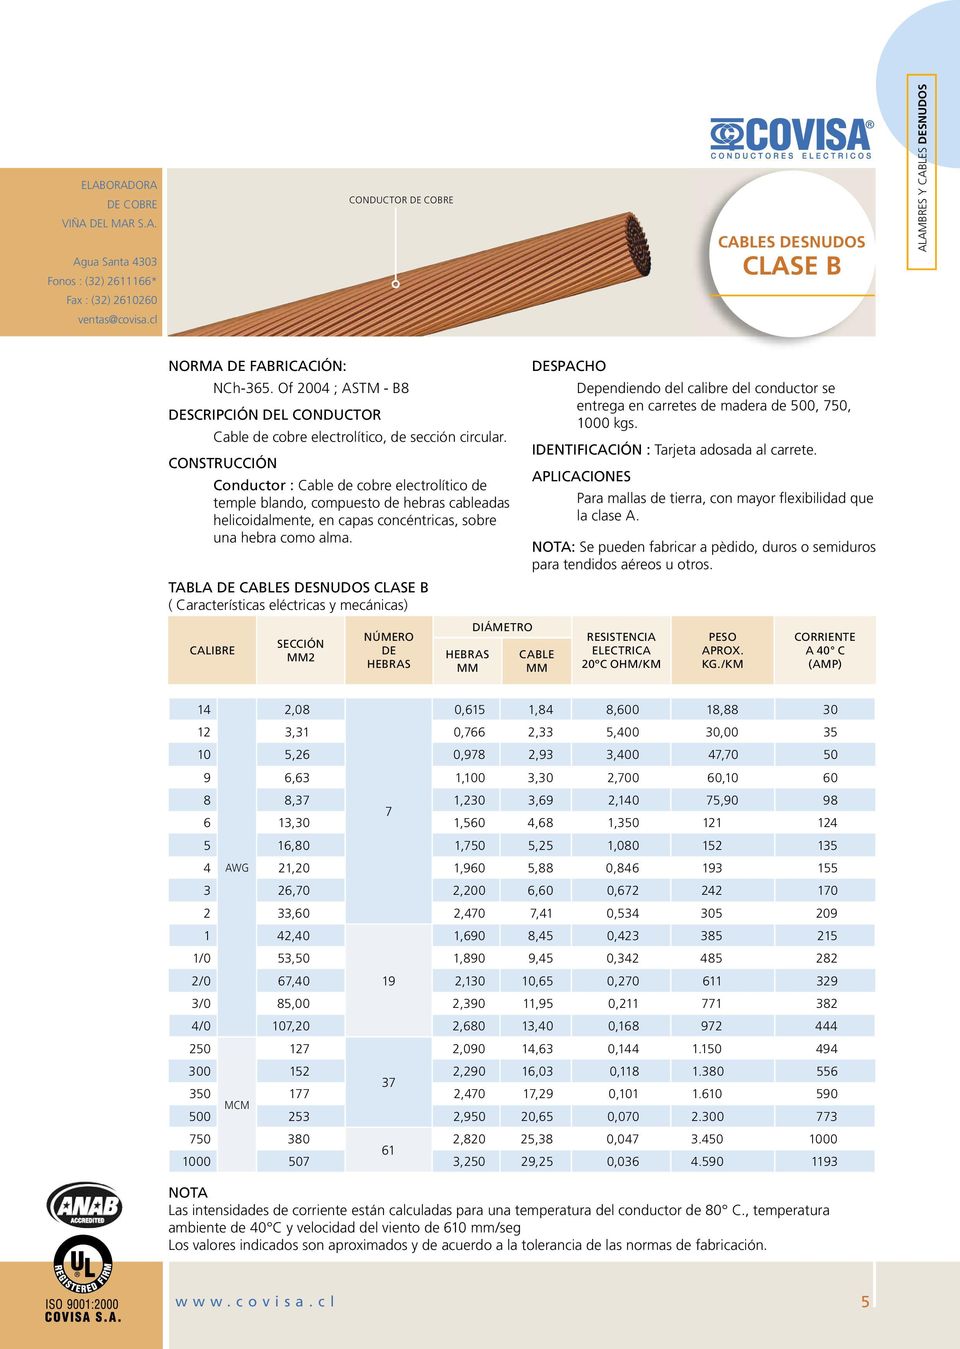 TABLA DE CLASE B 2 NÚMERO DE DIÁMETRO DESPACHO Dependiendo del calibre del conductor se entrega en carretes de madera de 500, 50, 1000 kgs. : Tarjeta adosada al carrete.